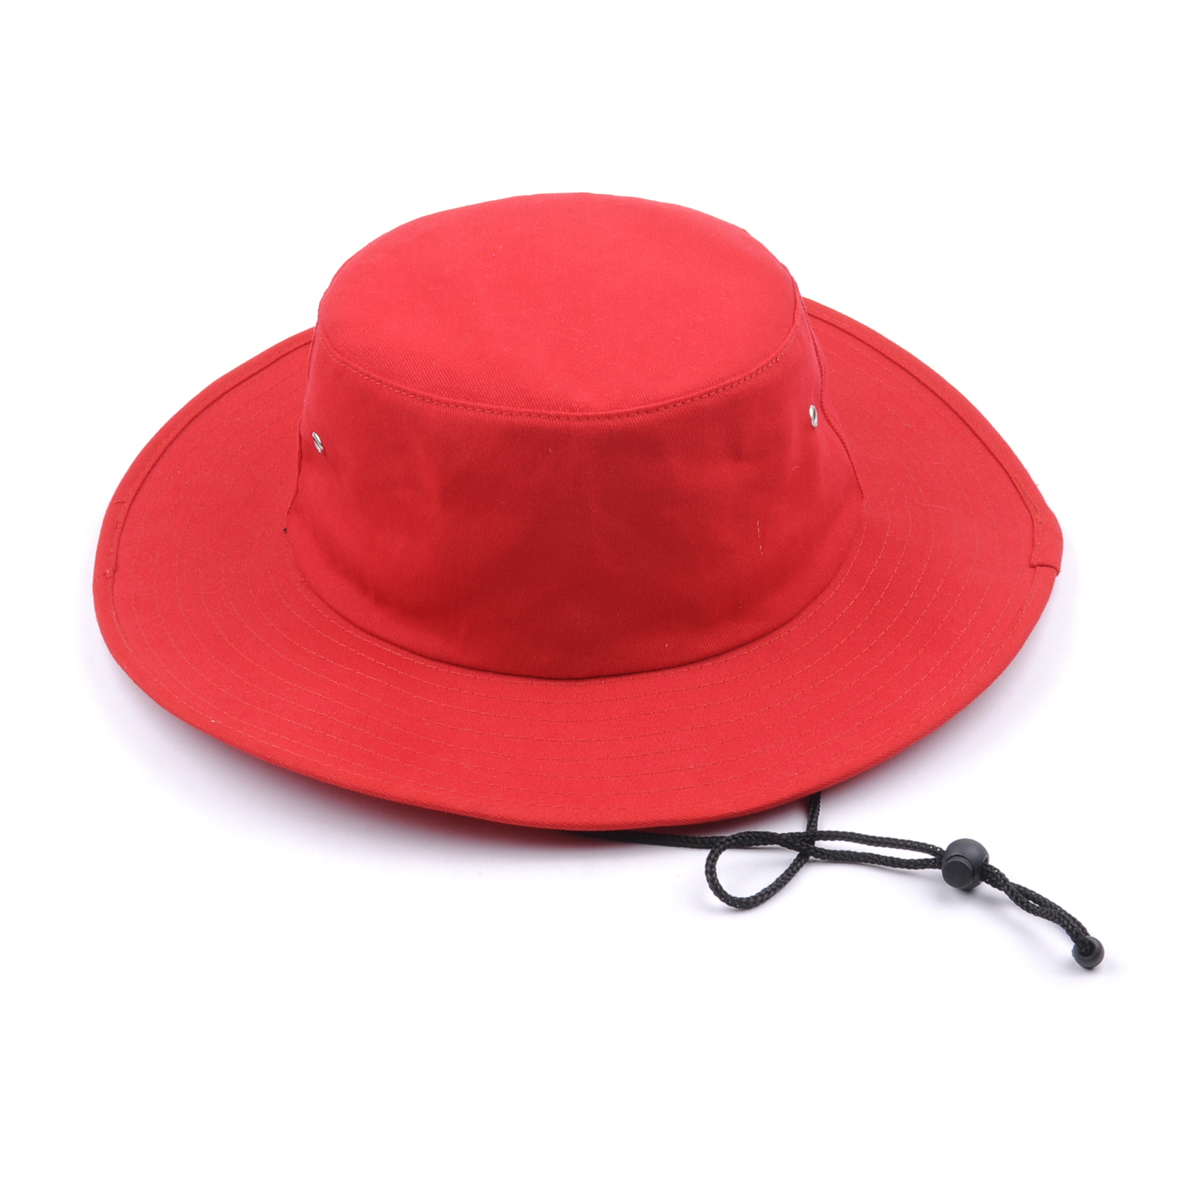 προσαρμοσμένο απλό κόκκινο κενό καπέλο σωλήνα σωληνώσεων